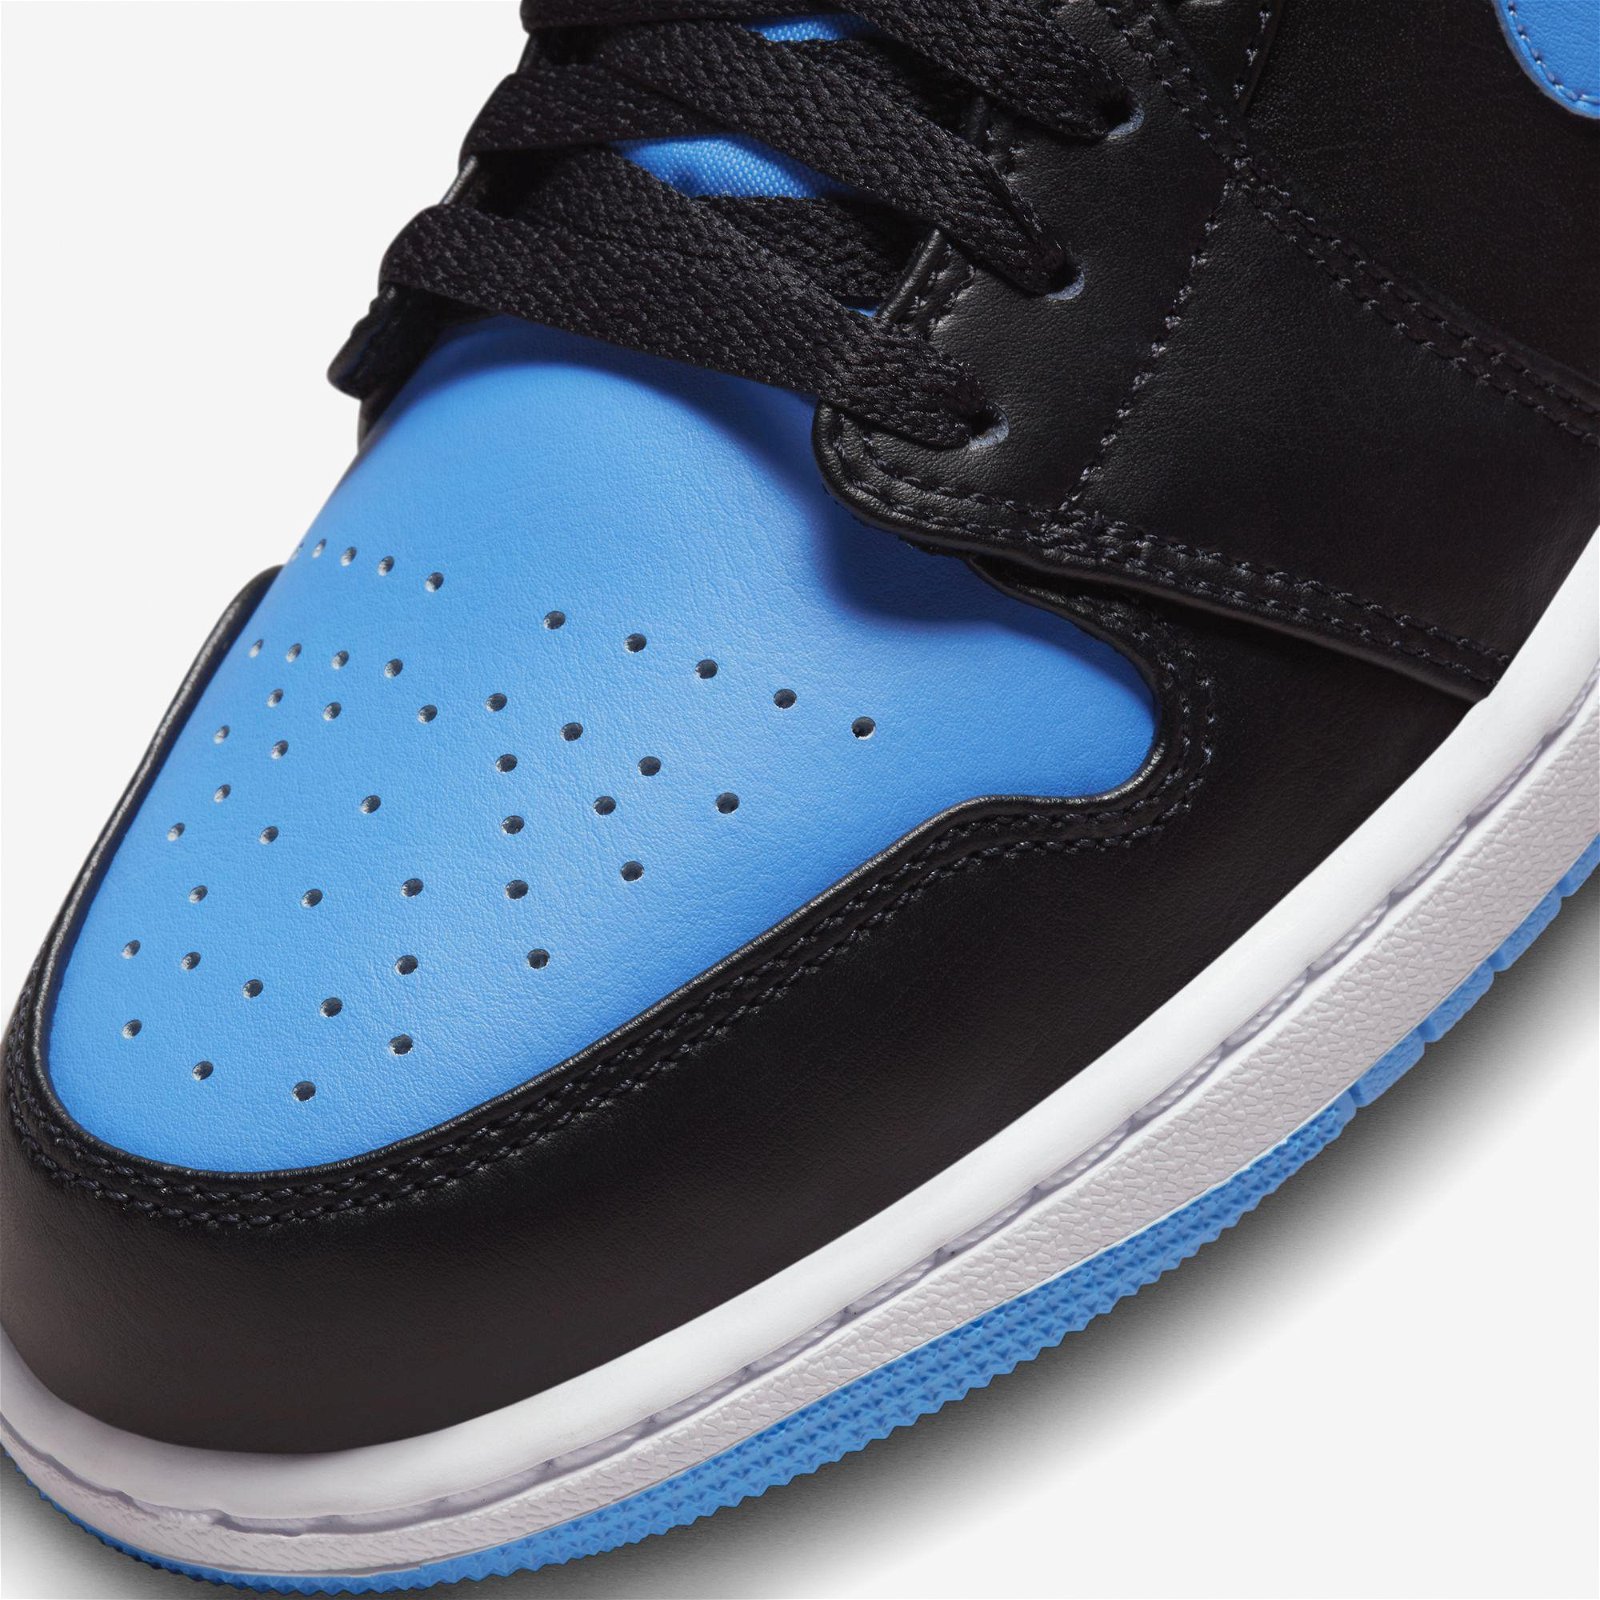 Jordan Air 1 Low Erkek Klasik Siyah - Mavi Spor Ayakkabı